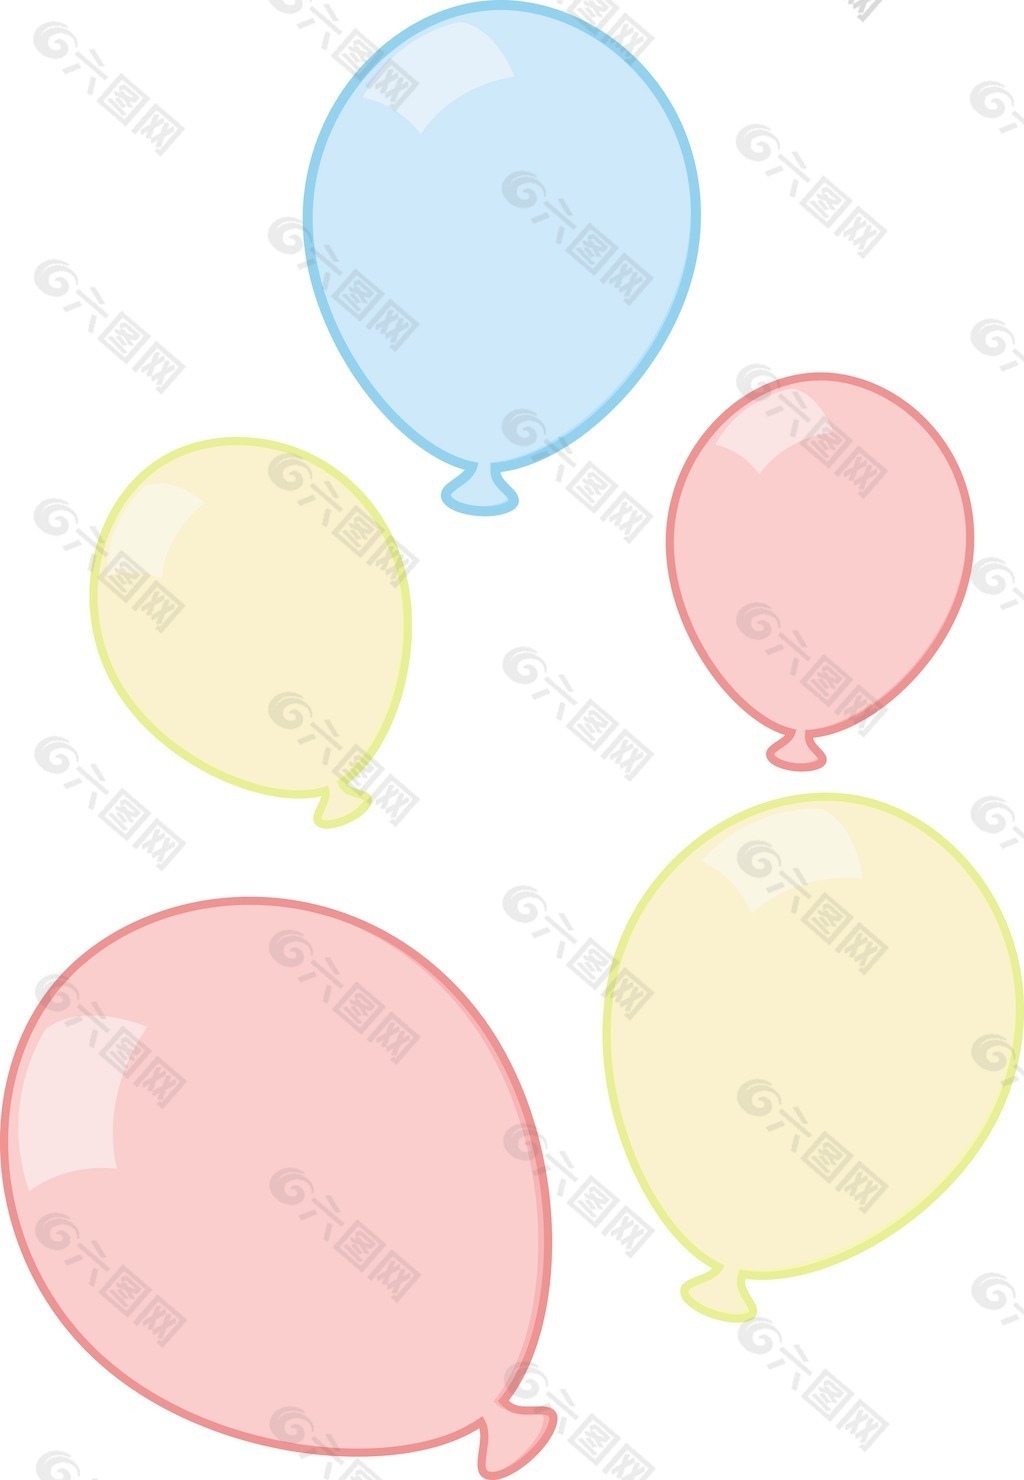 彩色气球